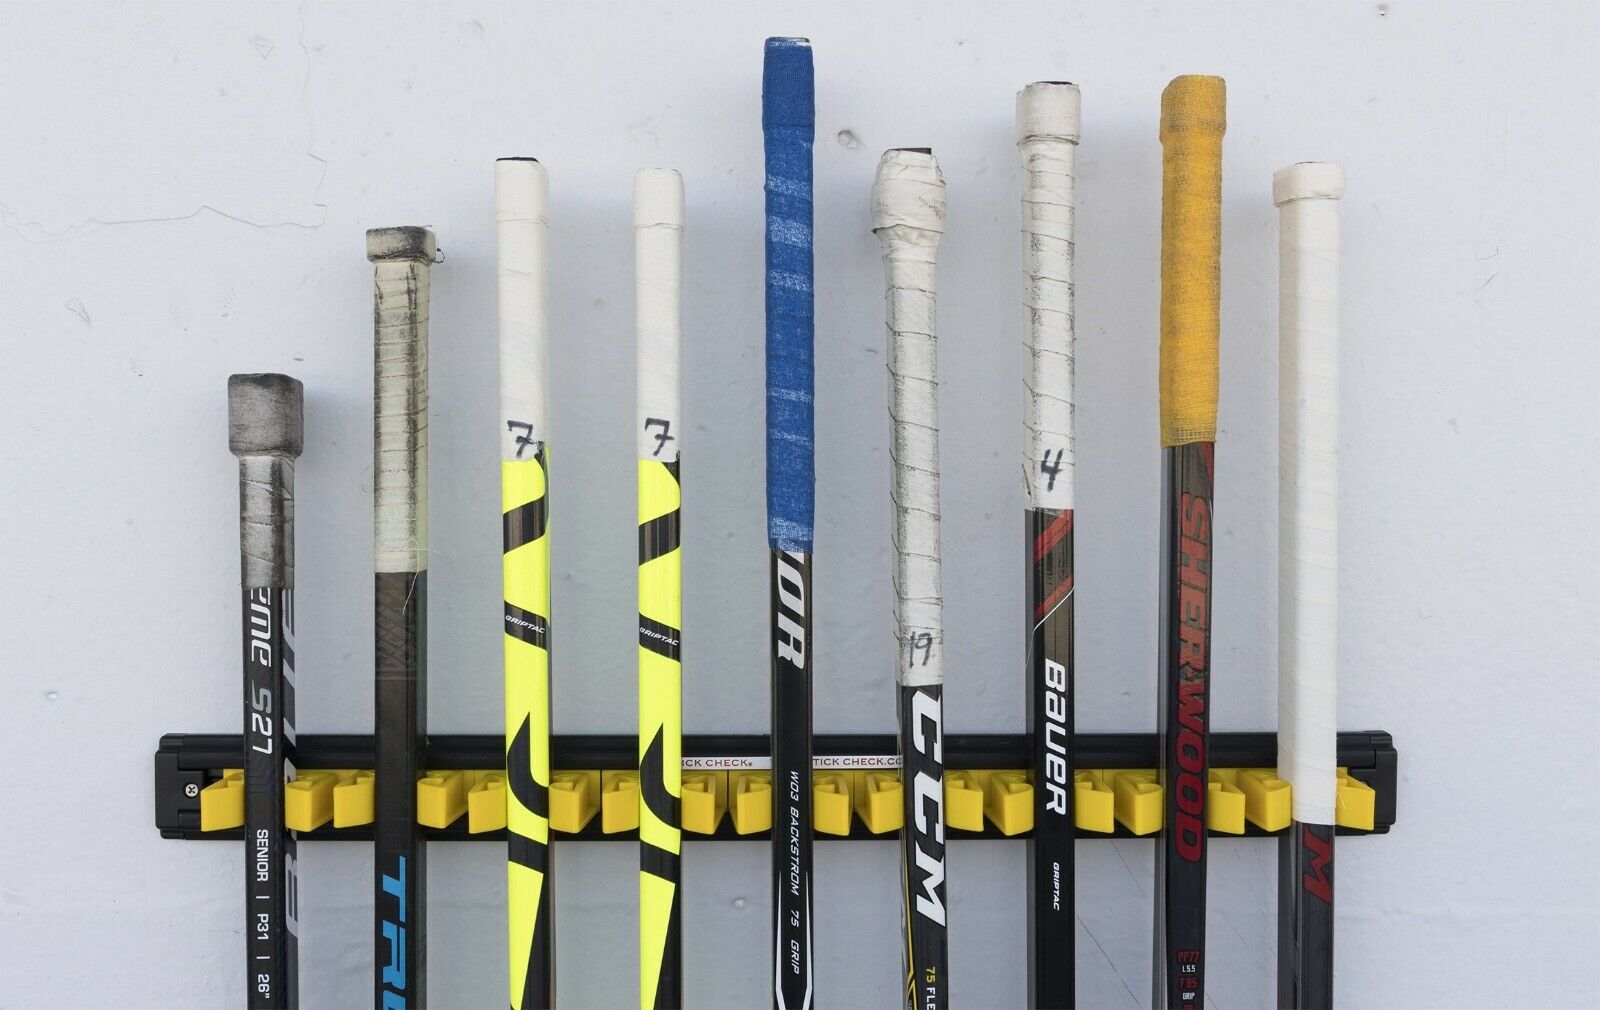 Stick Check Hockey Stick Rack! Holds 9 Sticks, Made In Canada Sticks Arena Home